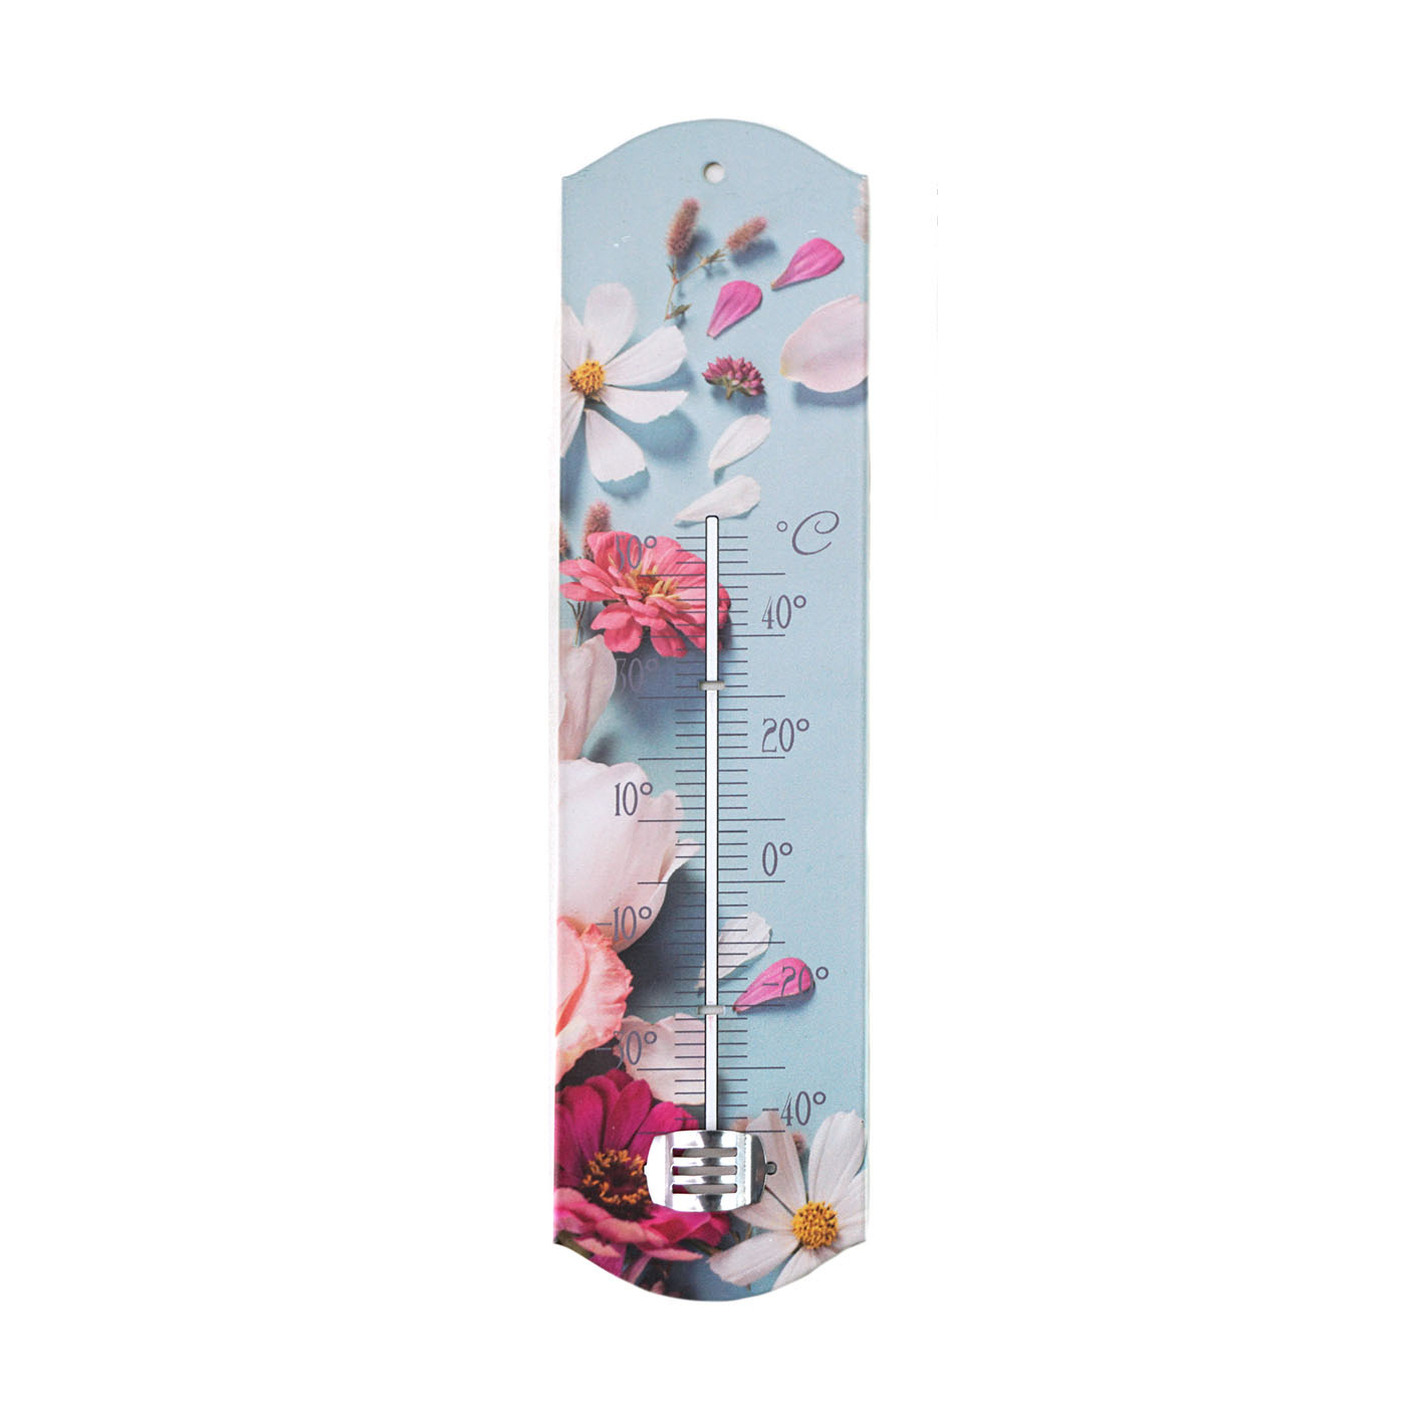 Alma garden Binnen/buiten thermometer met lentebloemen print - blauw/roze - metaal - 29 x 6.5 cm -